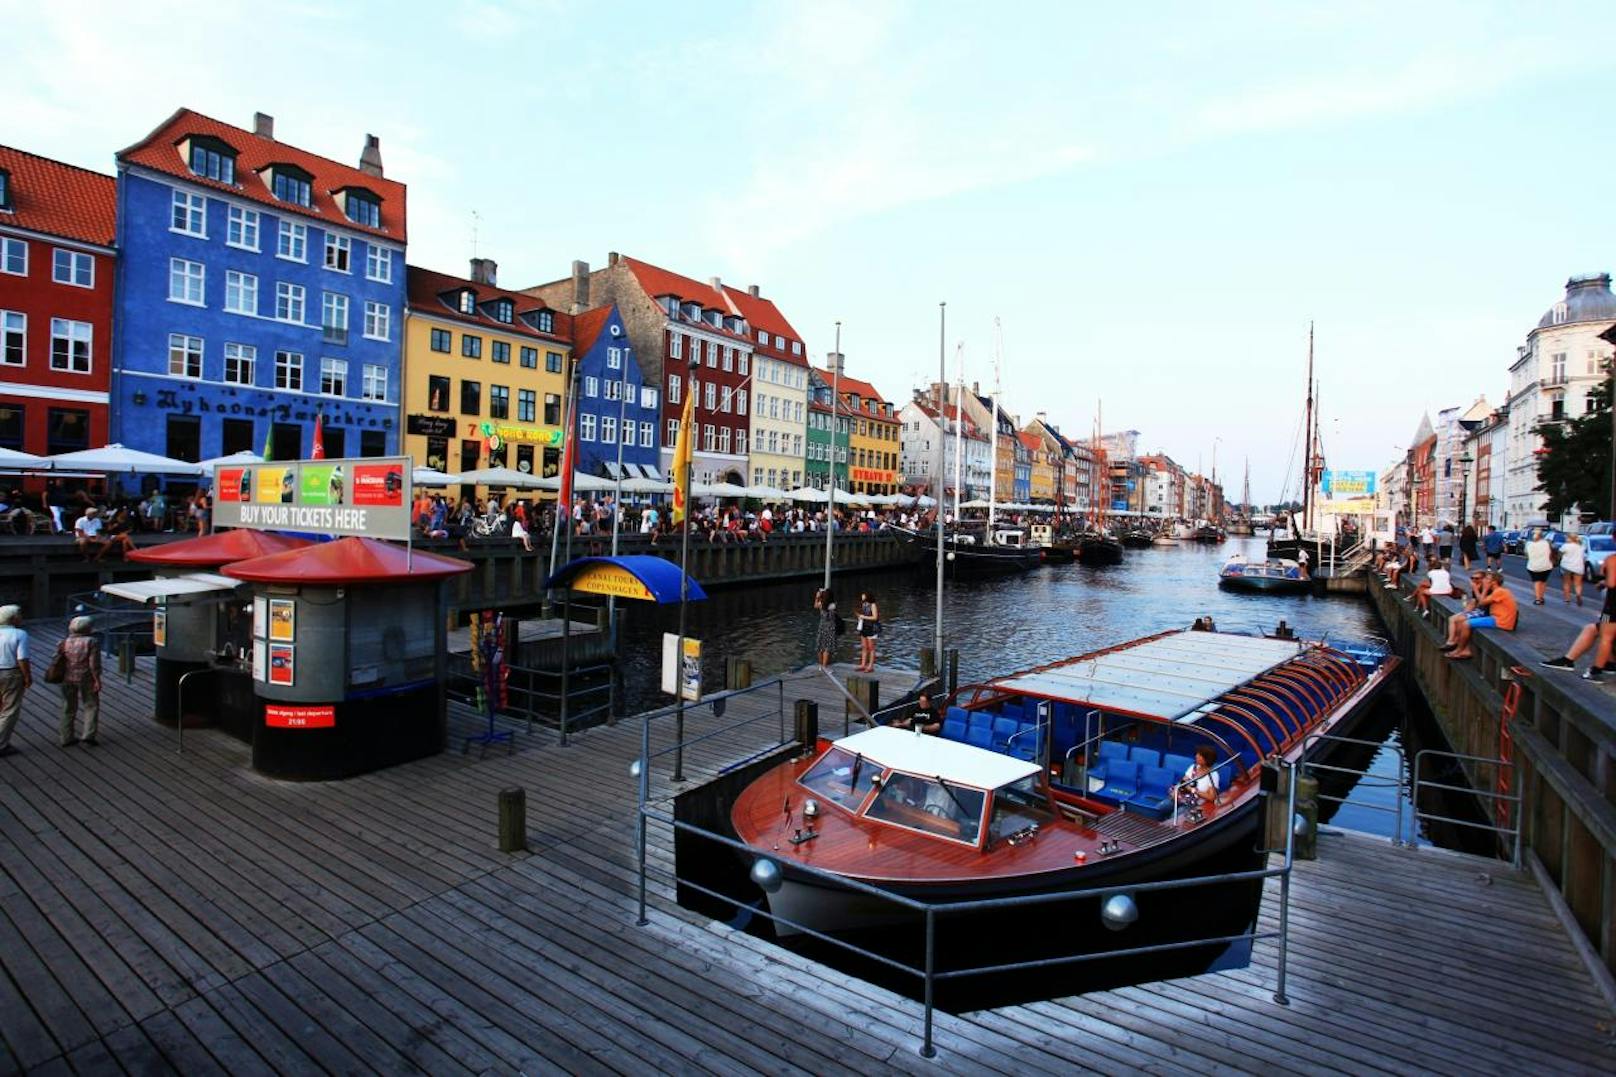 6. Kopenhagen
Eigentlich erstaunlich, dass es die dänische Stadt im Ranking so weit nach oben schafft, gibt es in Dänemark doch mehr Schweine als Menschen. Aber selbst beim traditionellen Smørrebrød darf ja aufs Brot, was schmeckt - auch Pflanzliches.